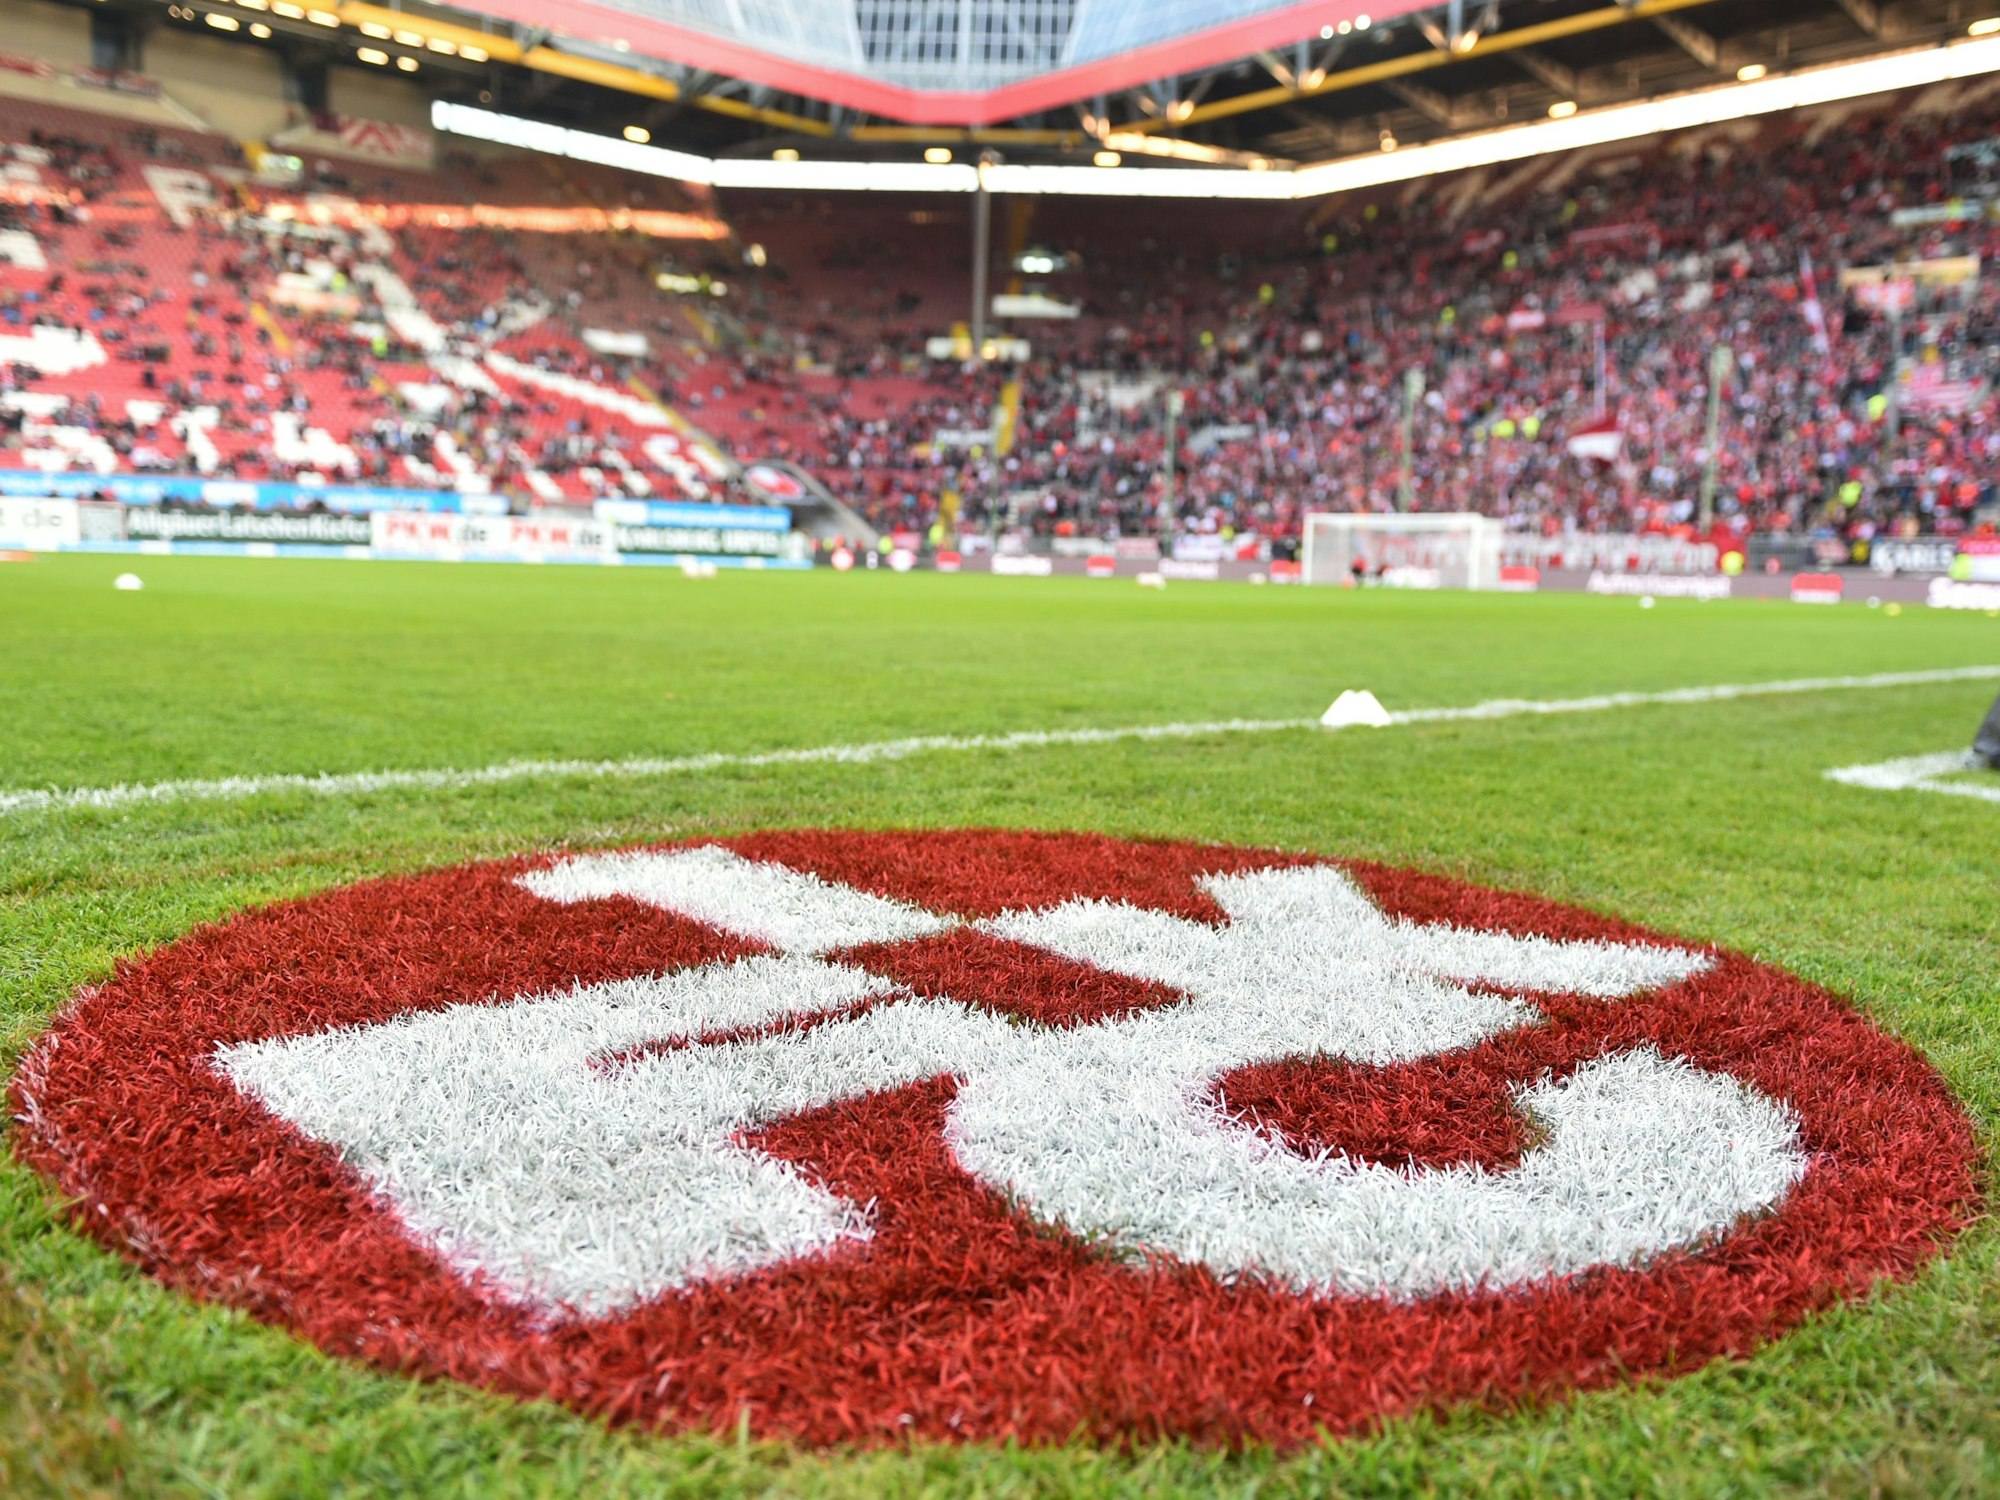 Das Wappen des 1. FC Kaiserslautern ist auf dem Rasen des Spielfelds zu sehen.